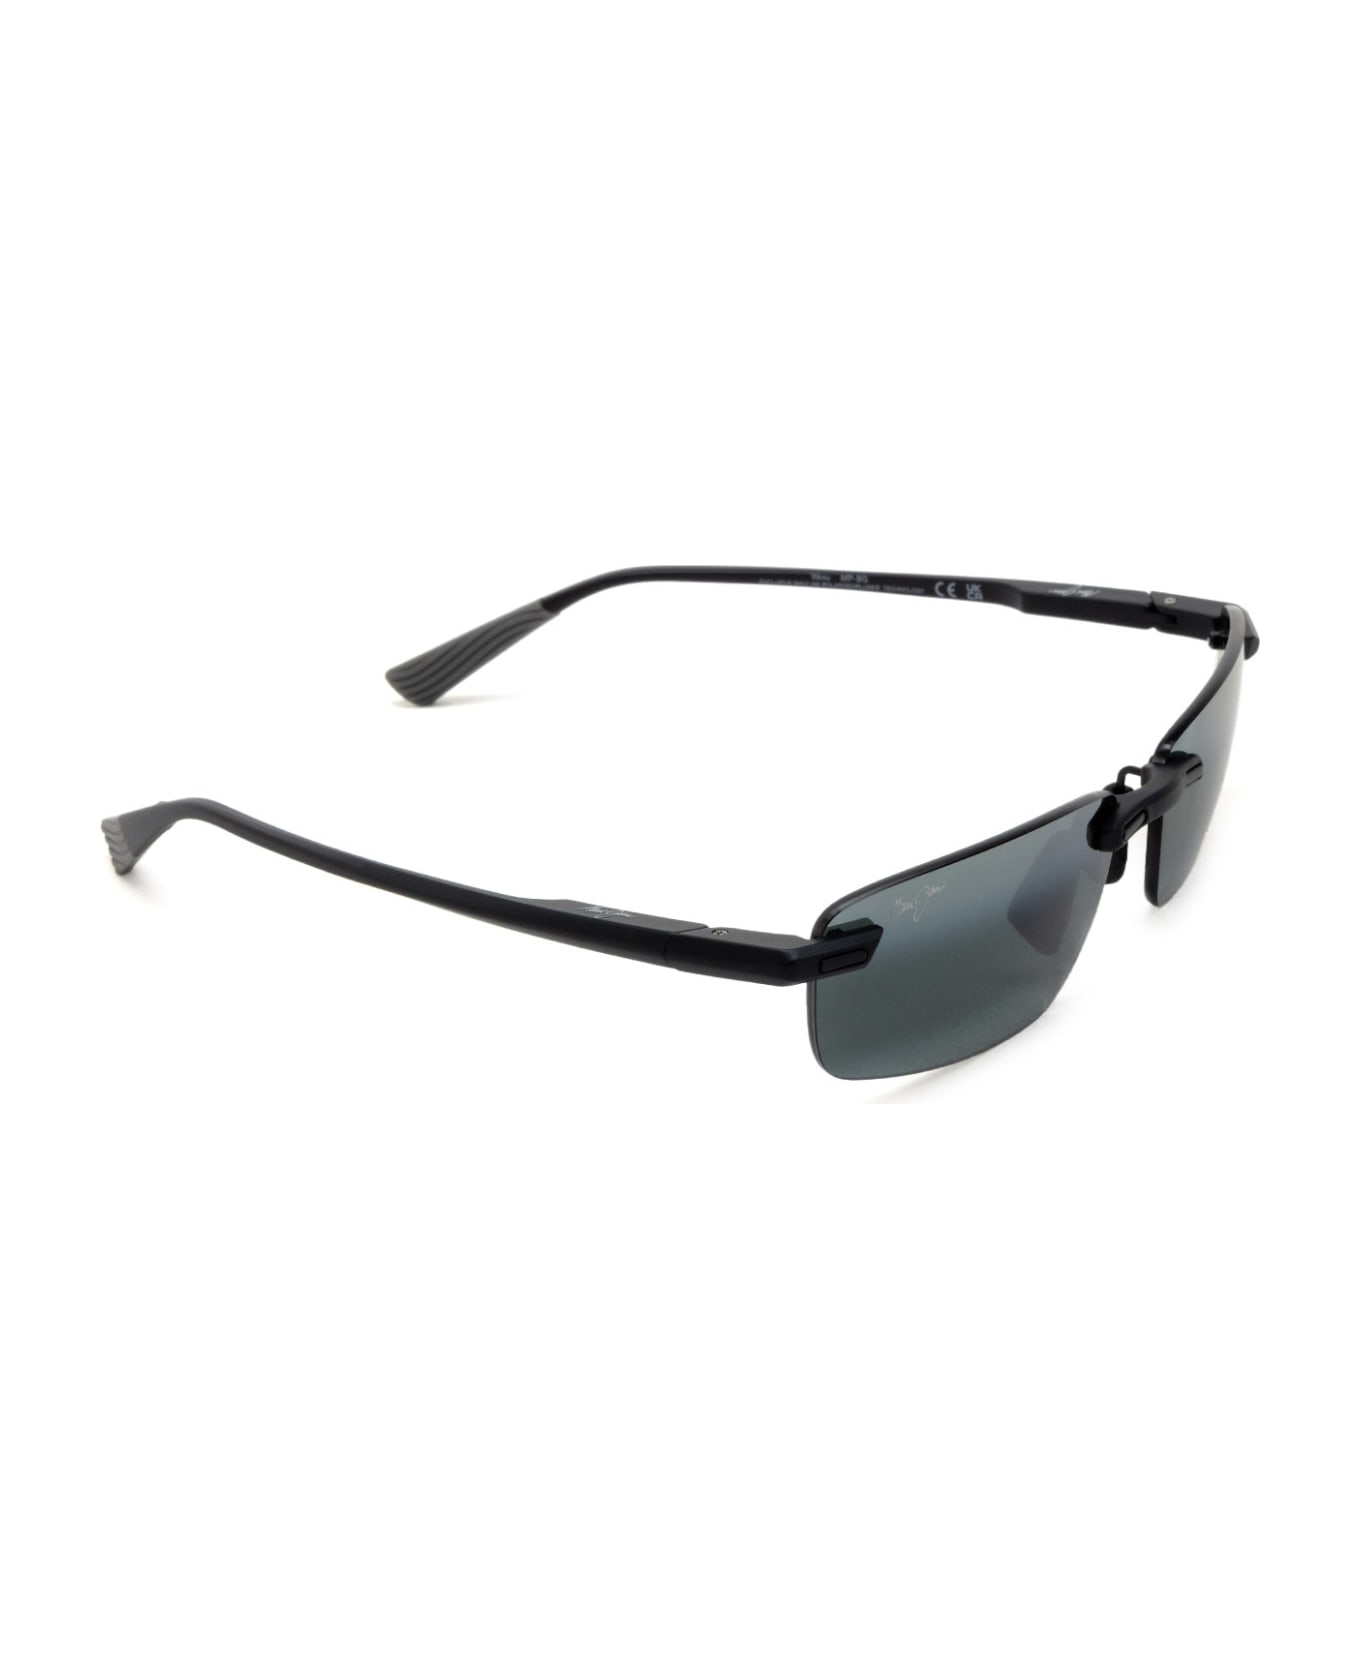 Maui Jim Mj630 Matte Black Sunglasses - Matte Black